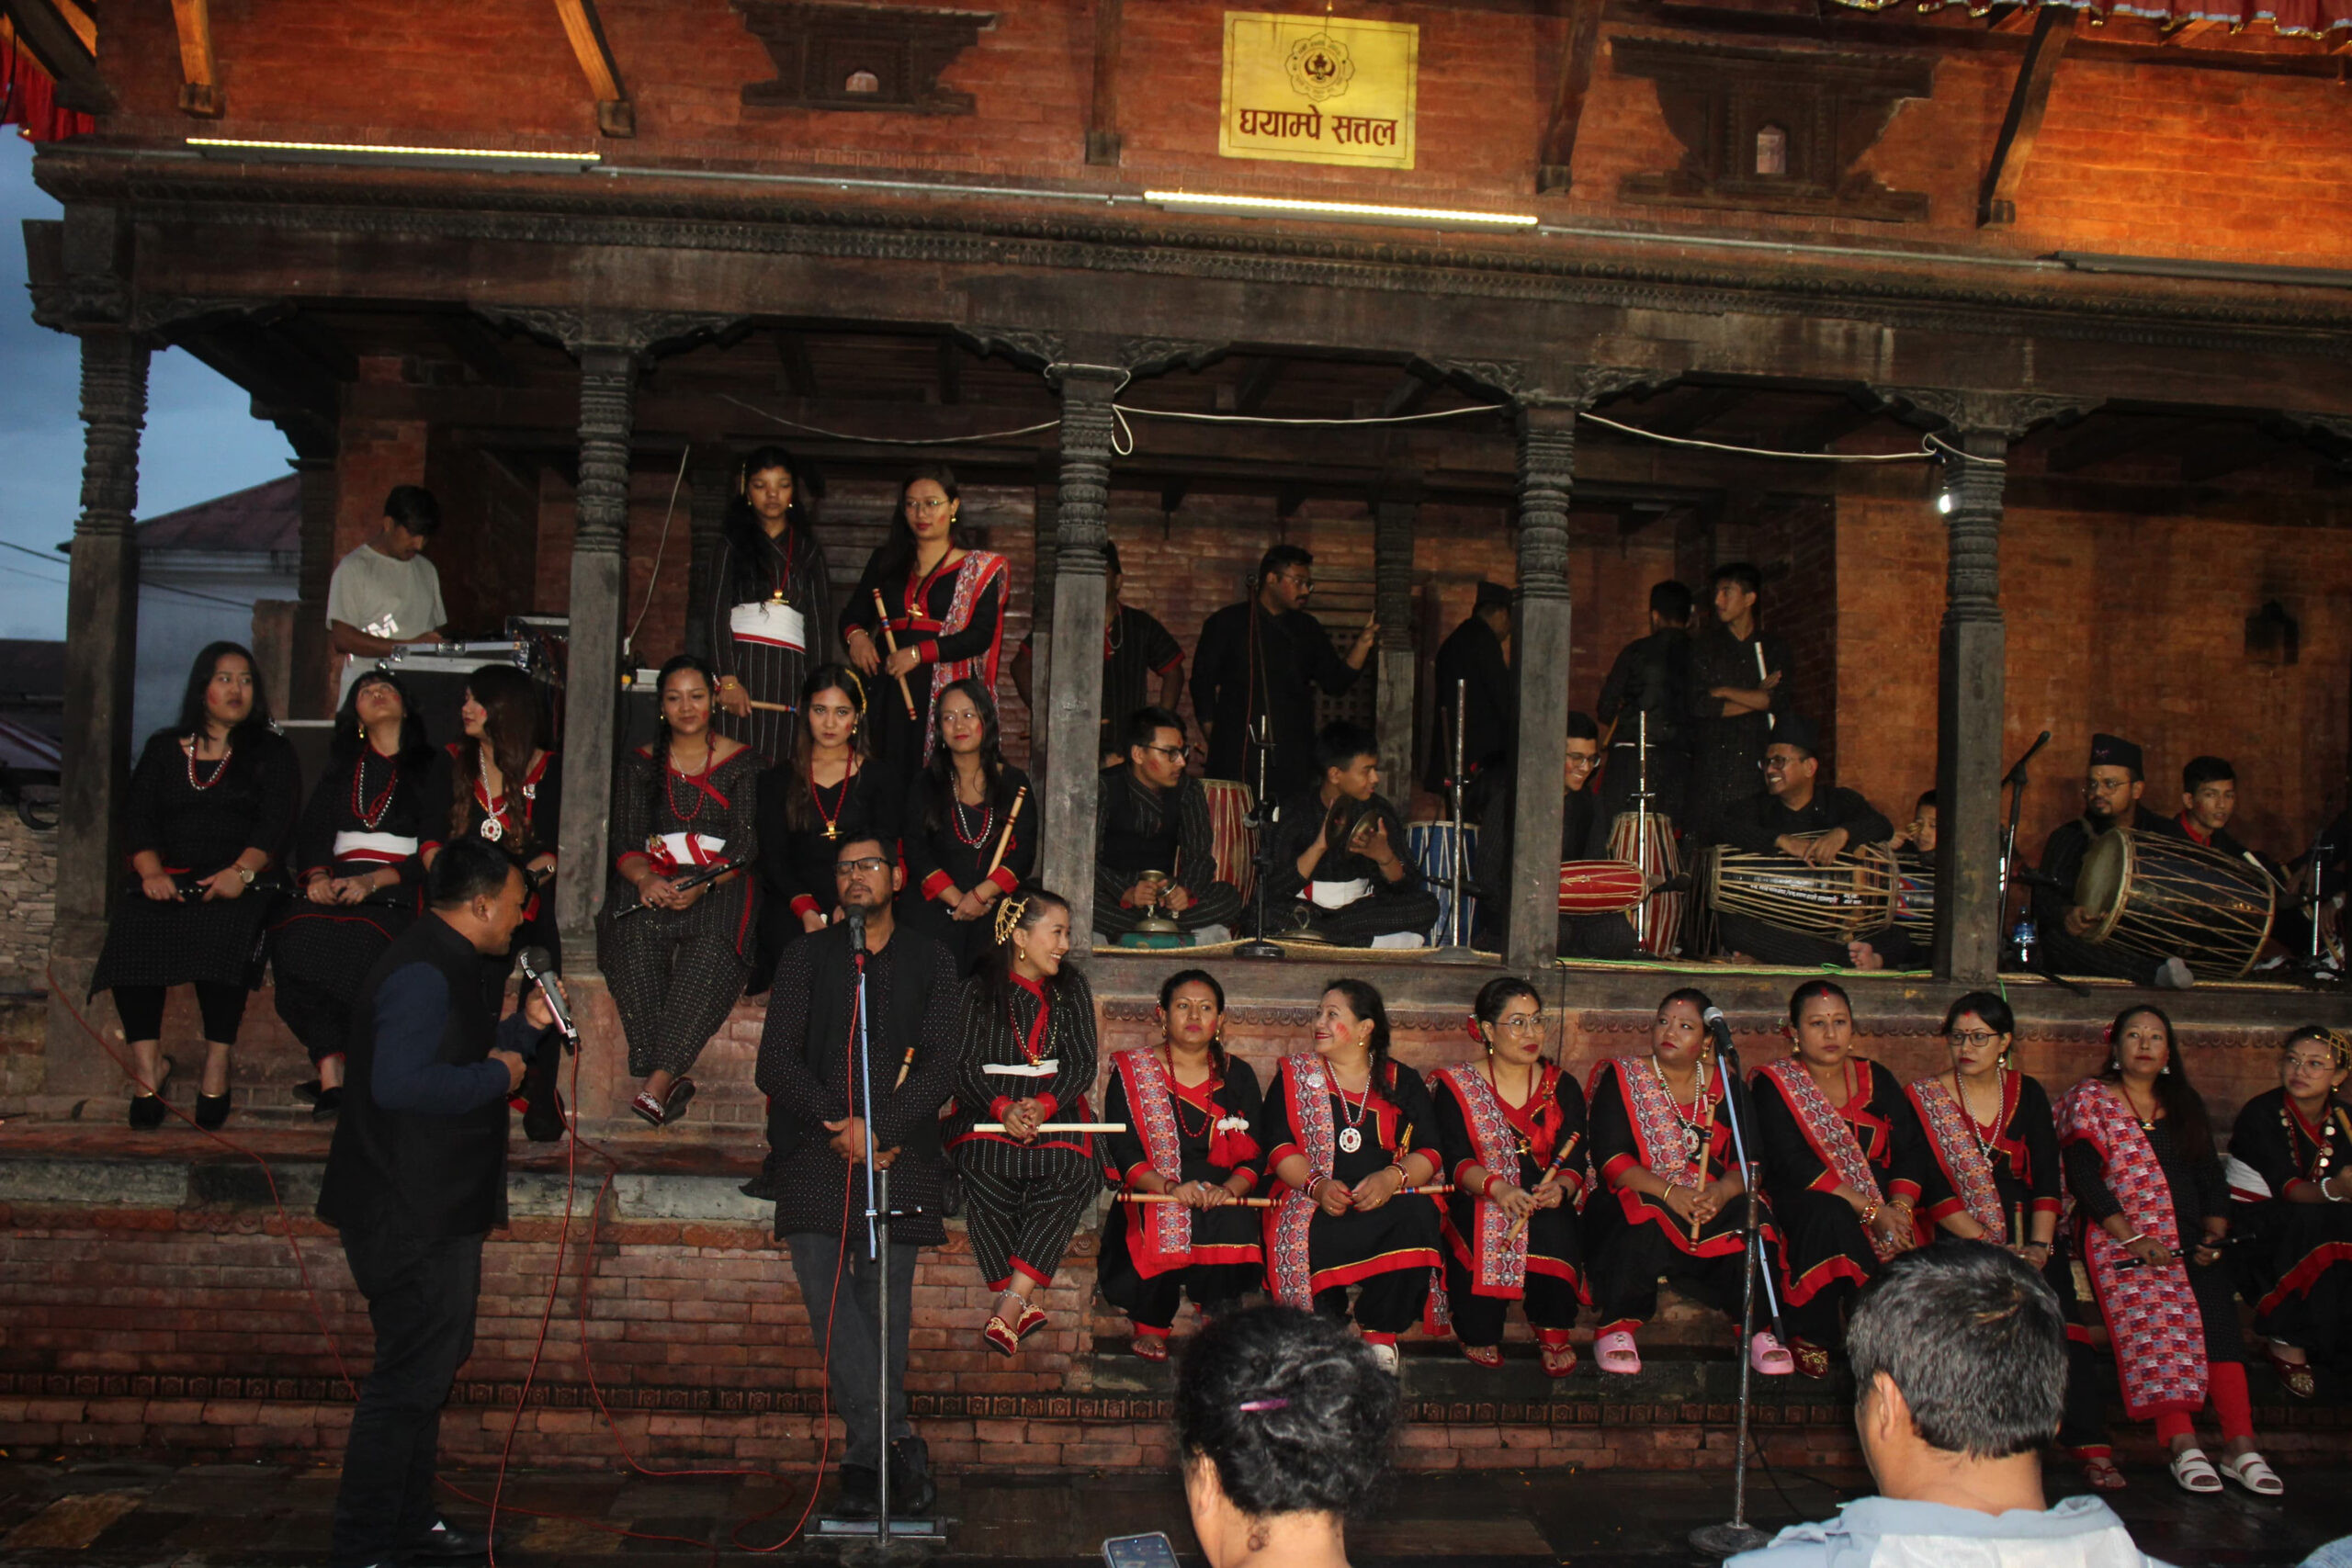 काठमाडौं महानगरका सात स्थानमा ७५ भन्दाबढी कलाकारको प्रस्तुति